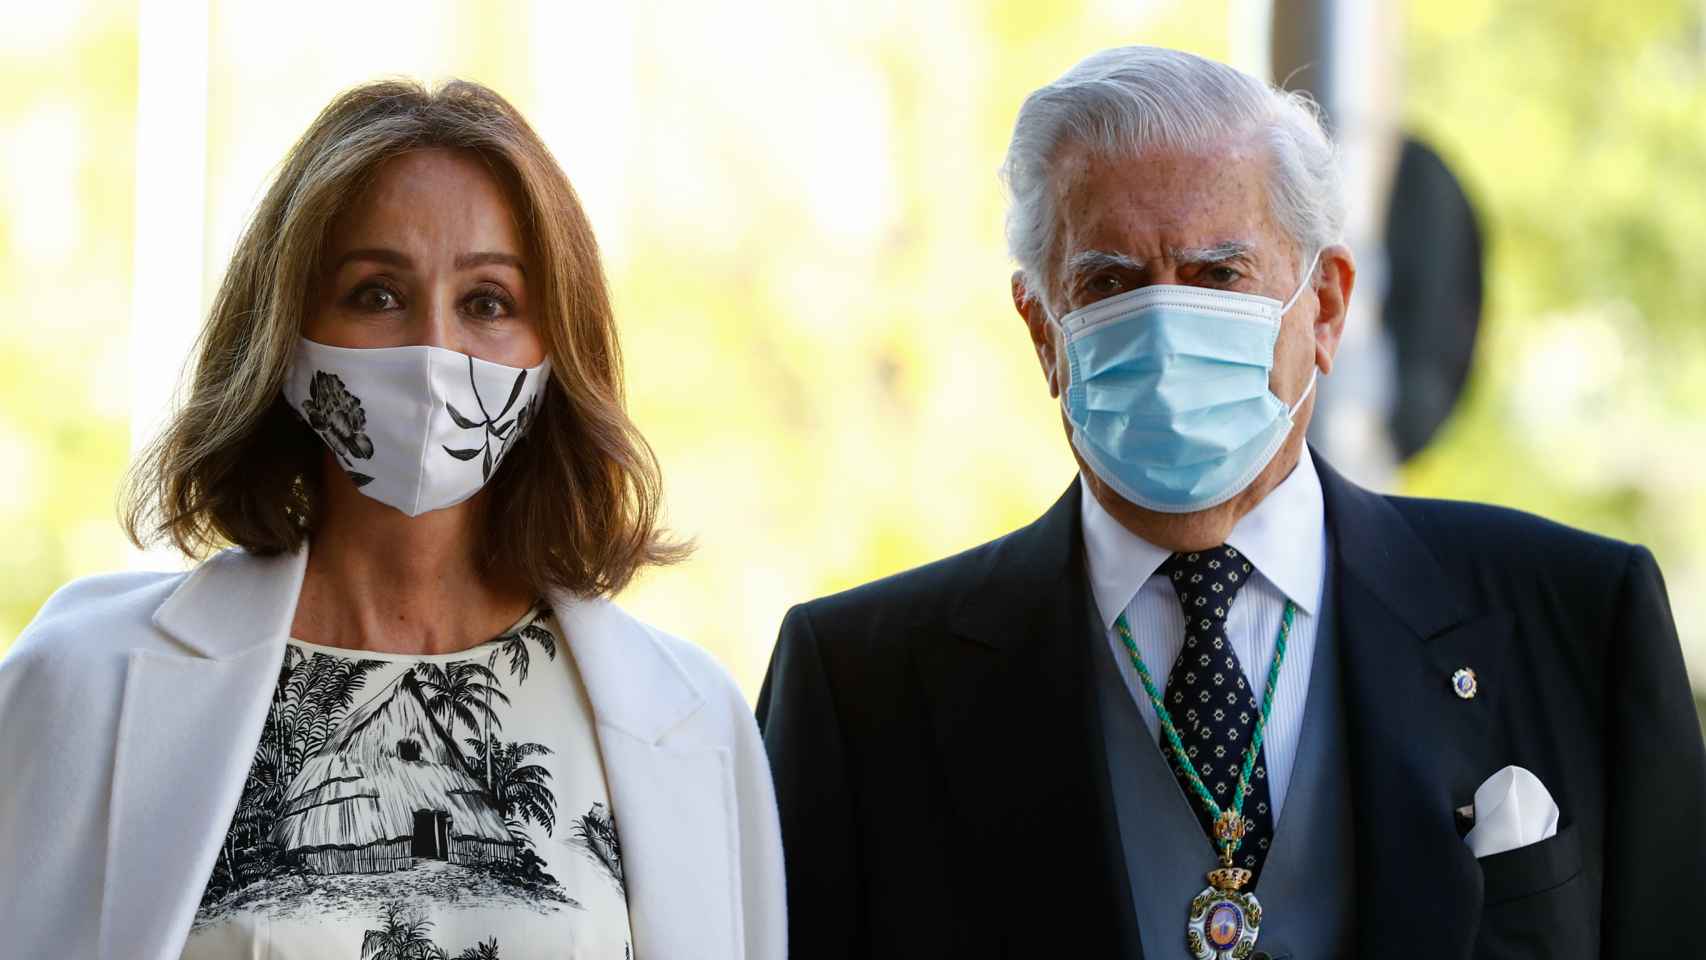 Isabel Preysler junto a su pareja sentimental, Mario Vargas Llosa, en un evento público en octubre de 2020.